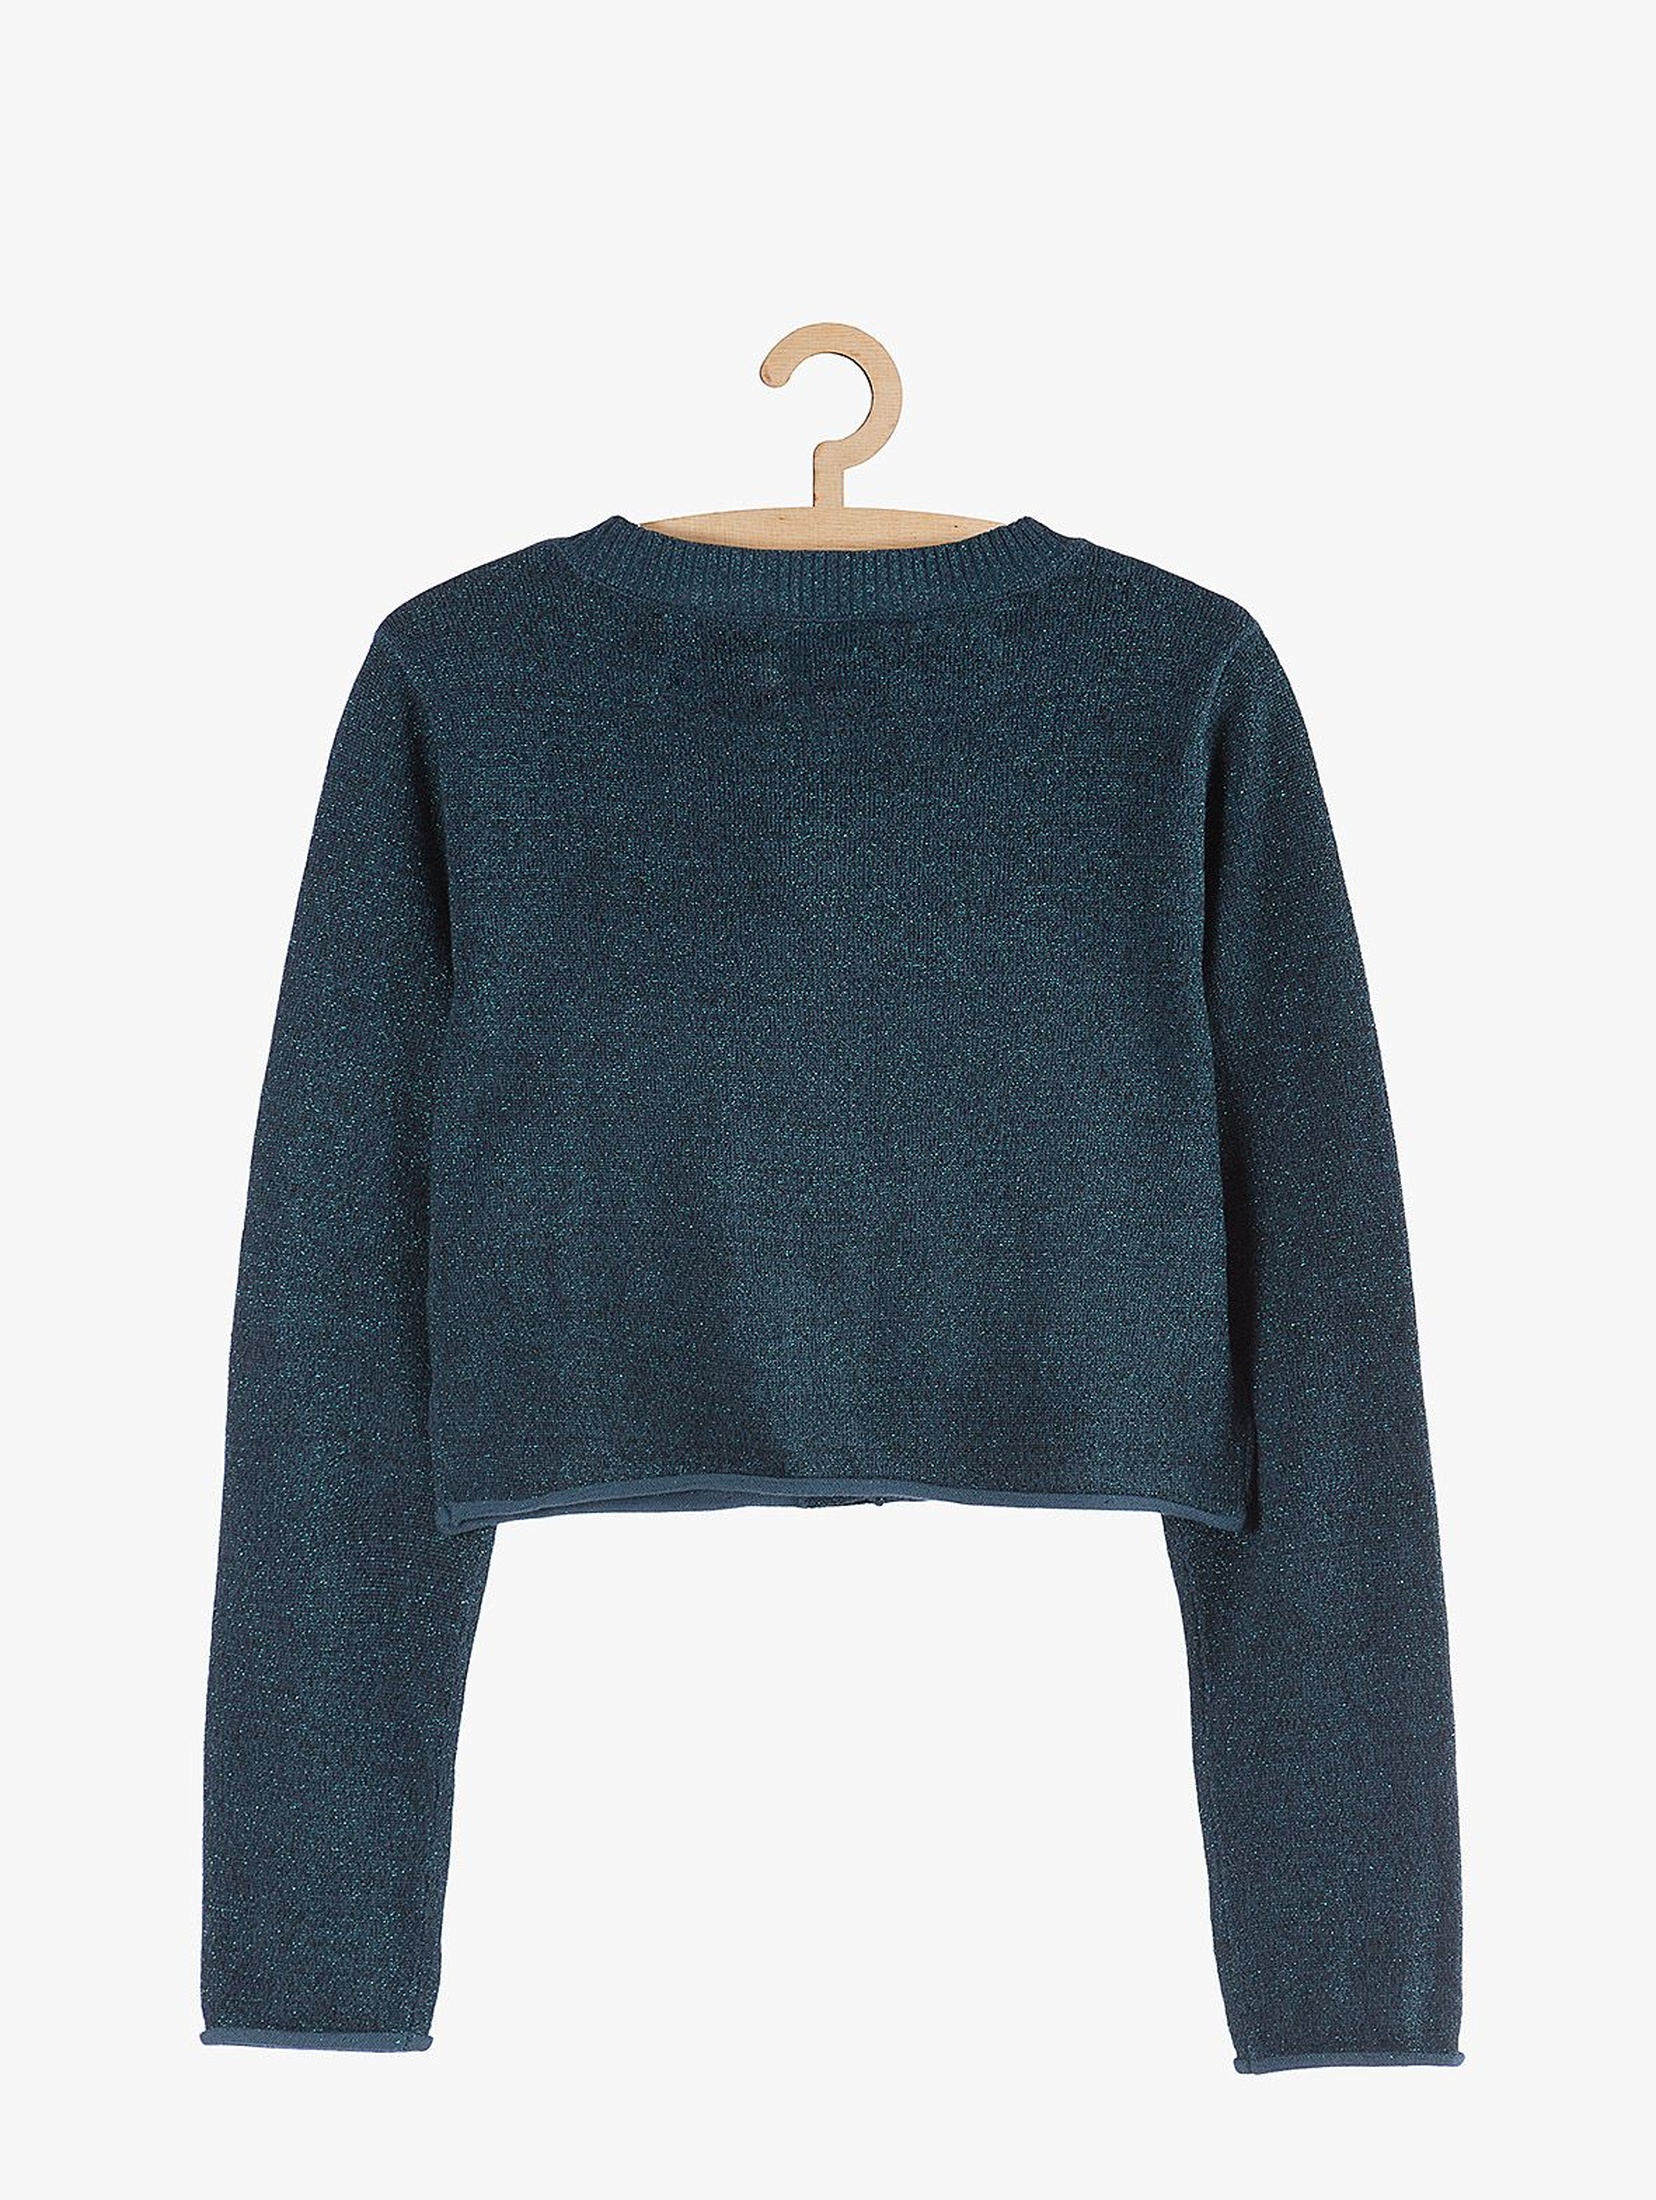 Elegancki-granatowy sweter dla dziewczynki